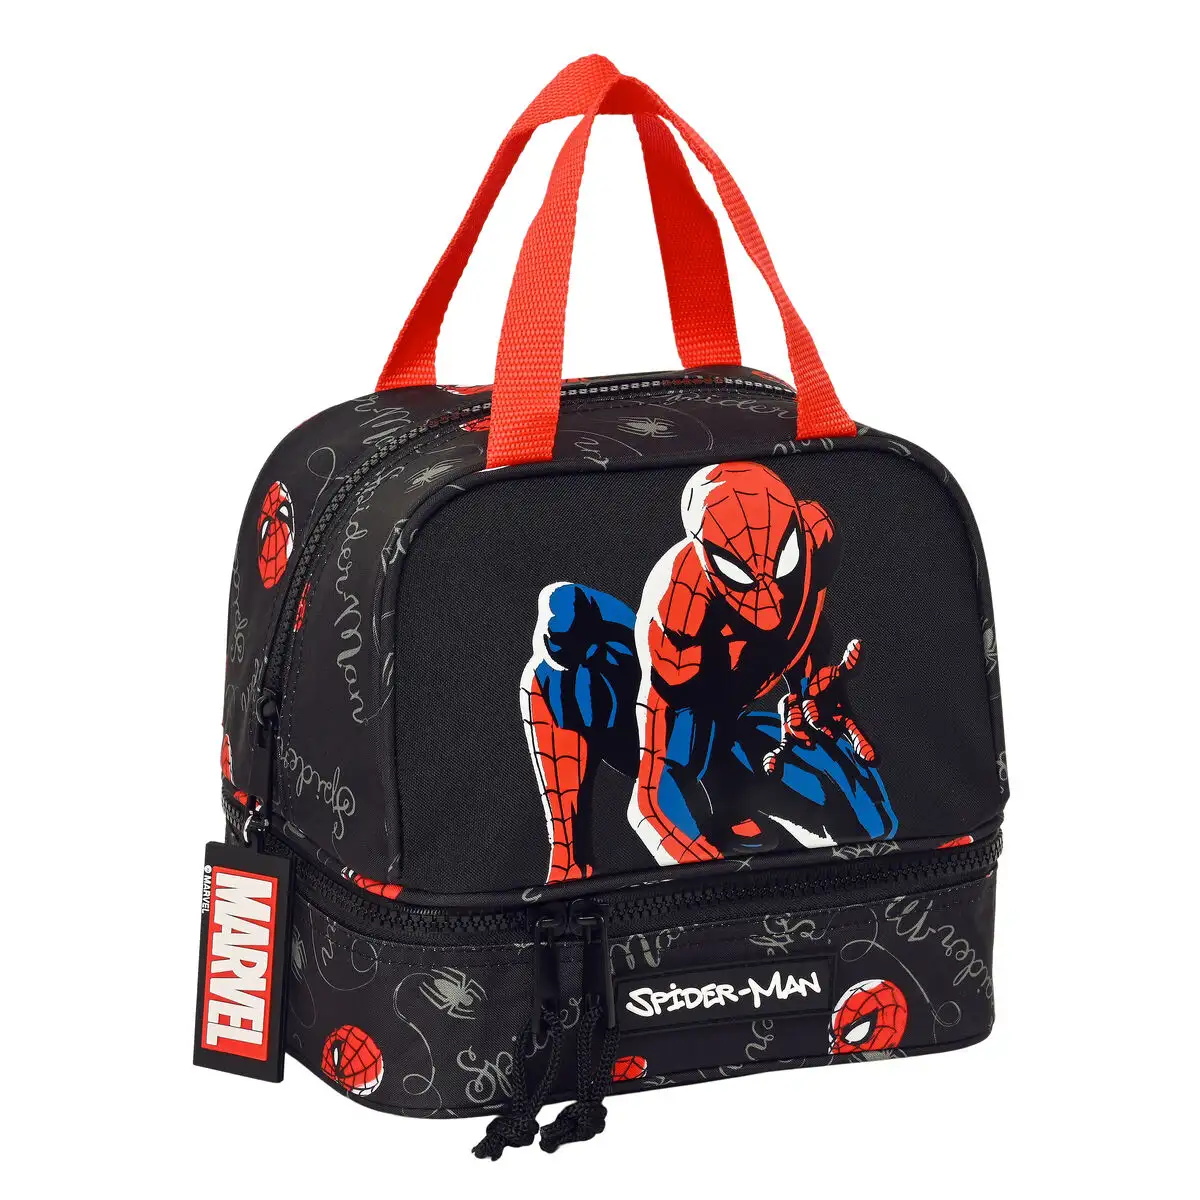 Sac a gouter spiderman hero noir 20 x 20 x 15 cm_5110. DIAYTAR SENEGAL - Votre Destination Shopping de Choix. Explorez notre boutique en ligne et découvrez des trésors qui reflètent votre style et votre passion pour l'authenticité.